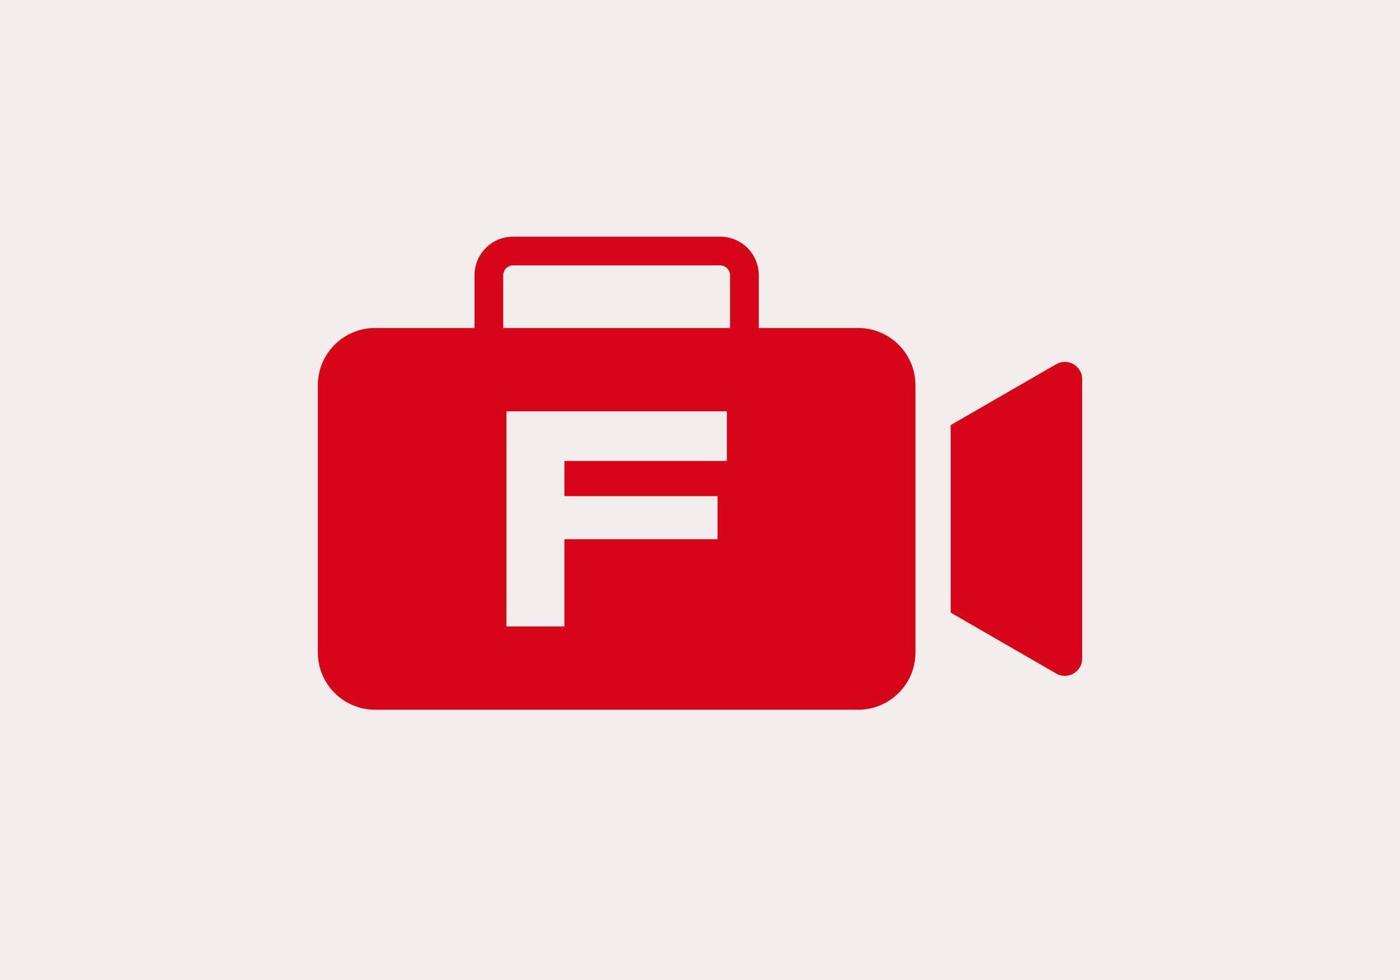 lettre f film caméra vidéo logo design cinéma film et vidéographie signe vecteur